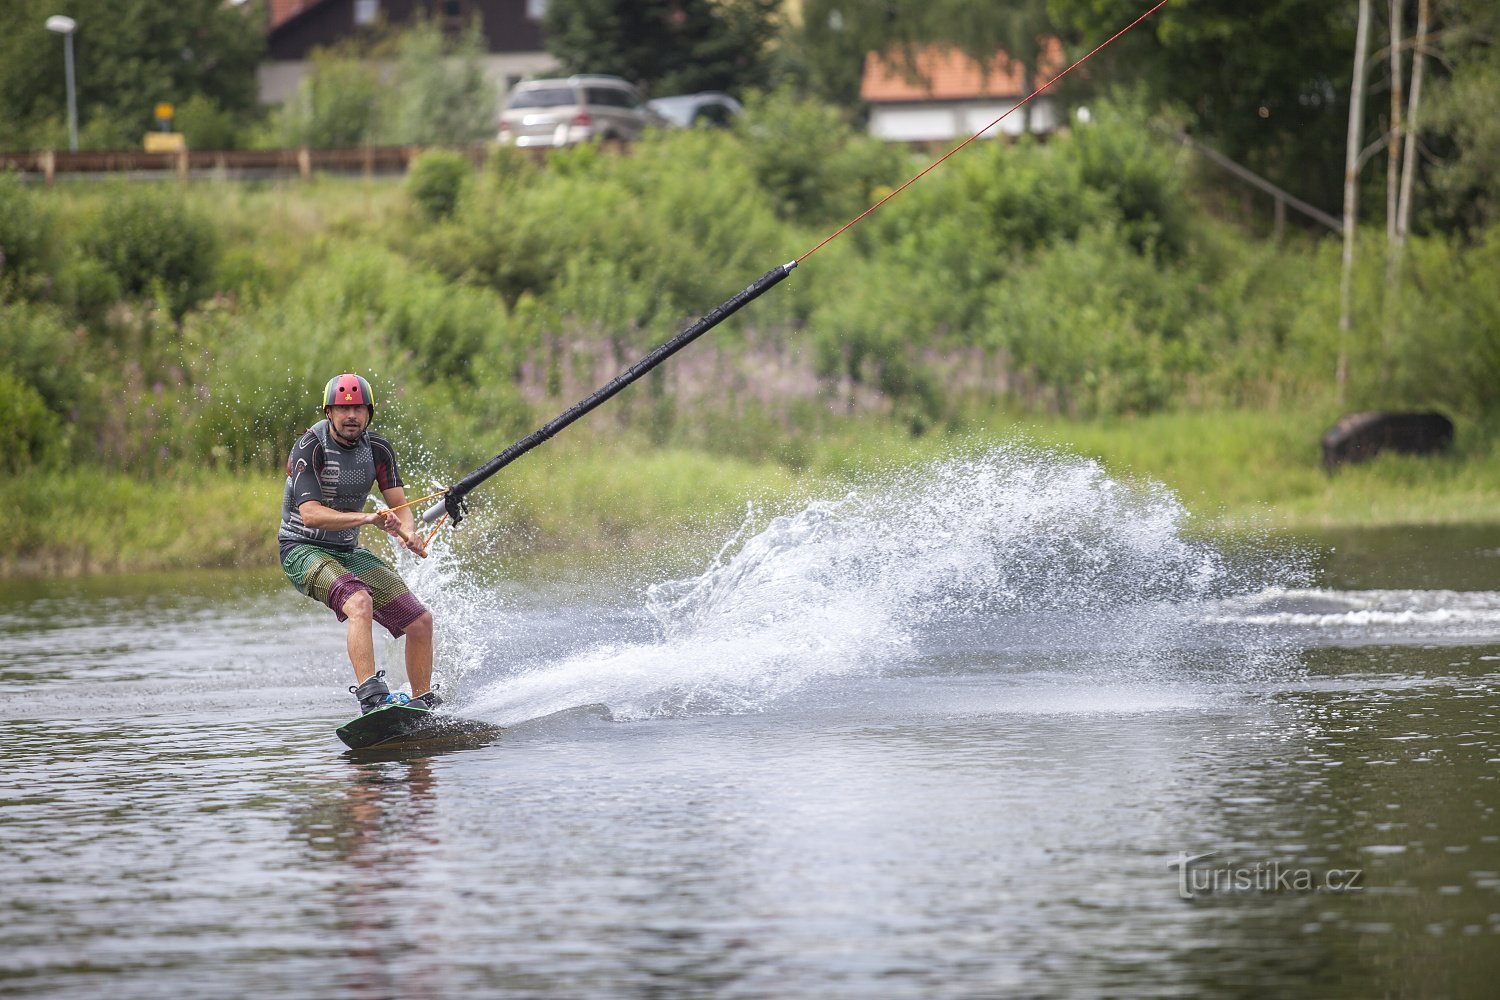 Tukaj se lahko preizkusite tudi v vožnji z vodno vlečnico - bo wakeboarding vaš najljubši?